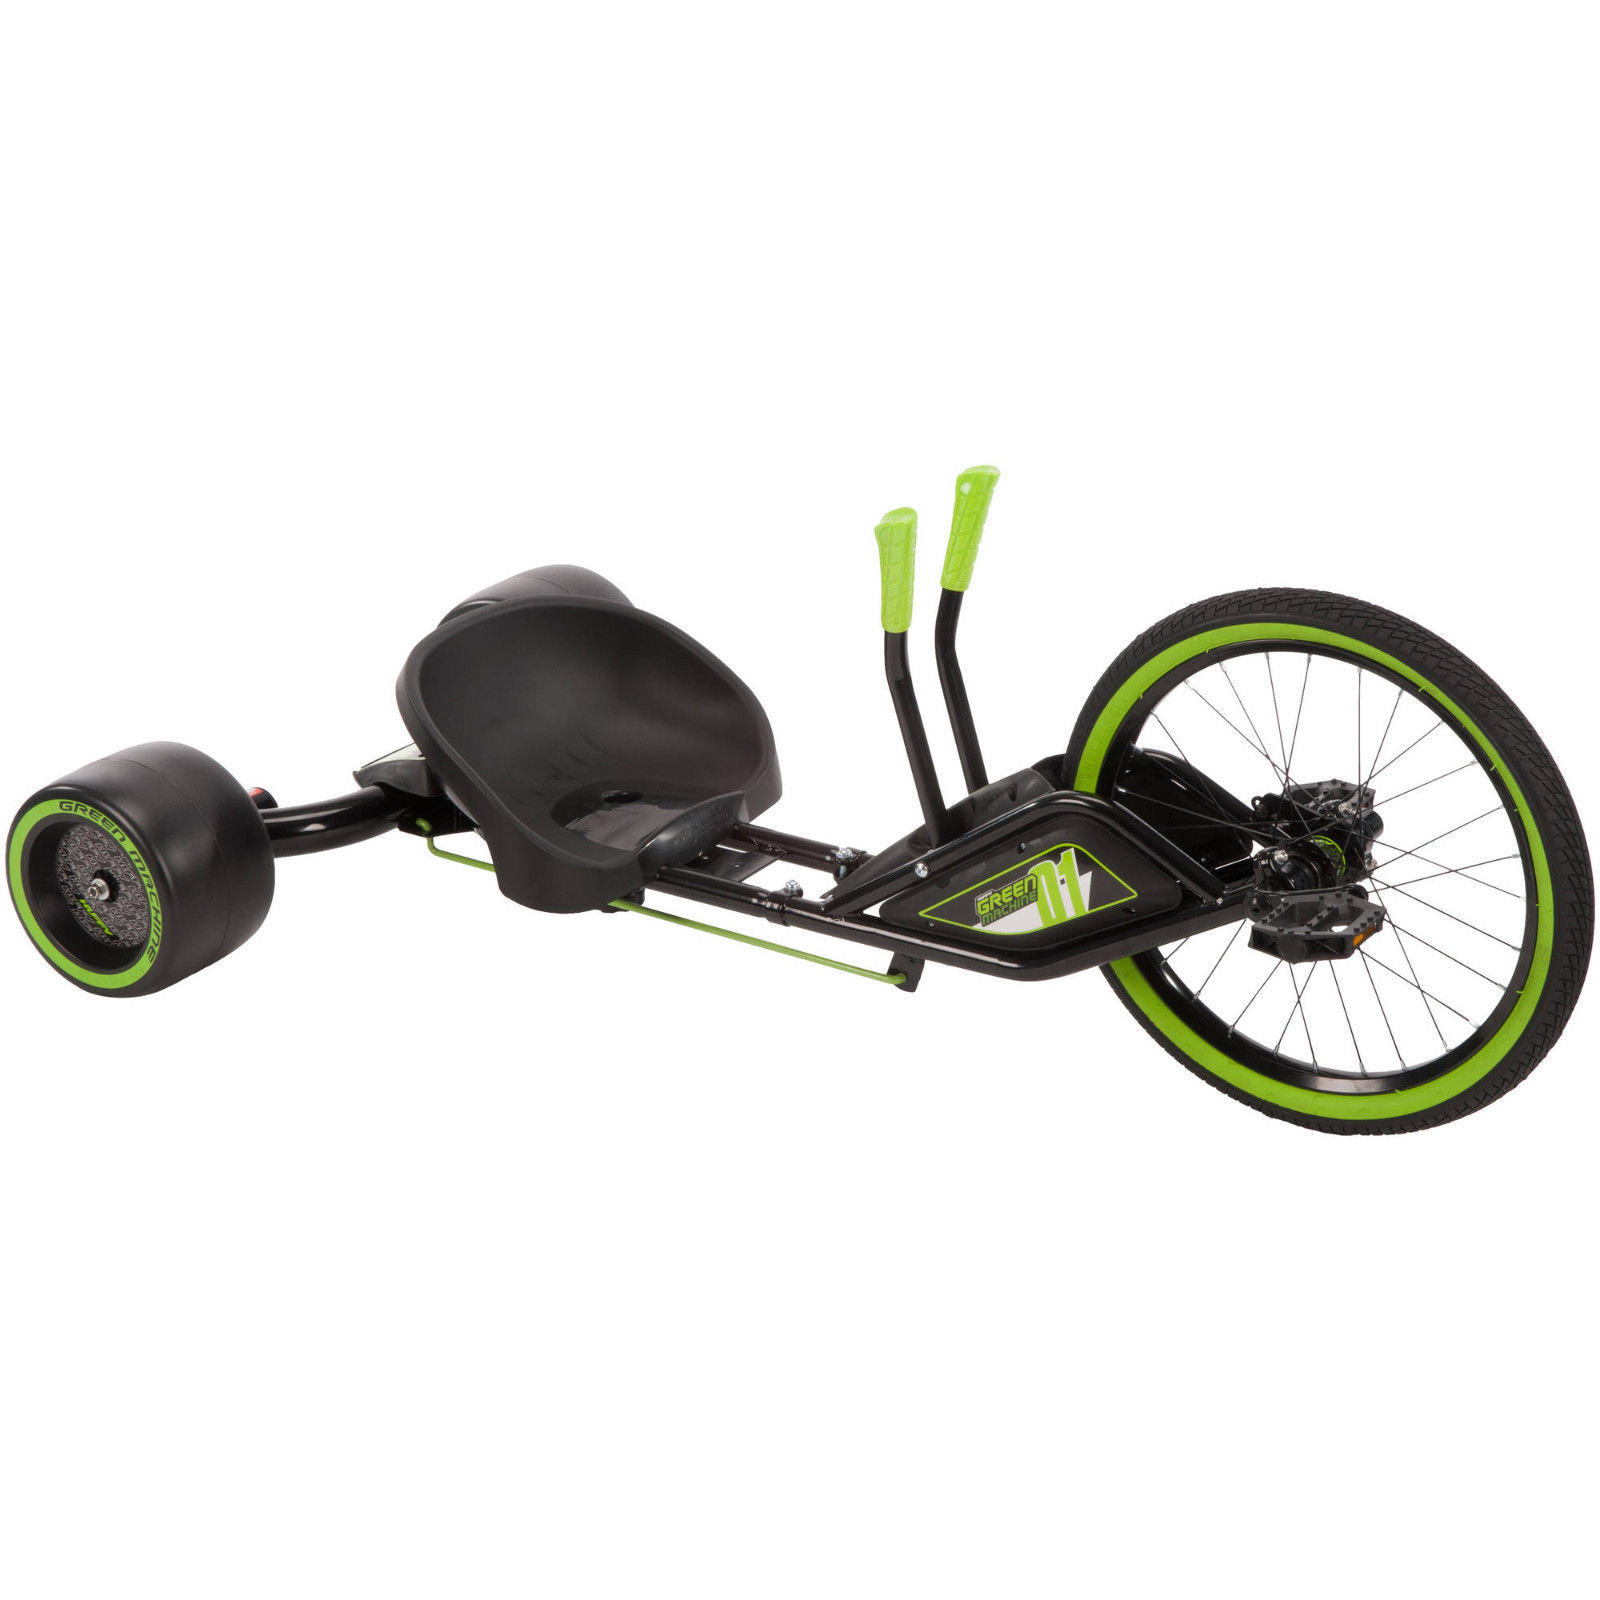 green trike bike